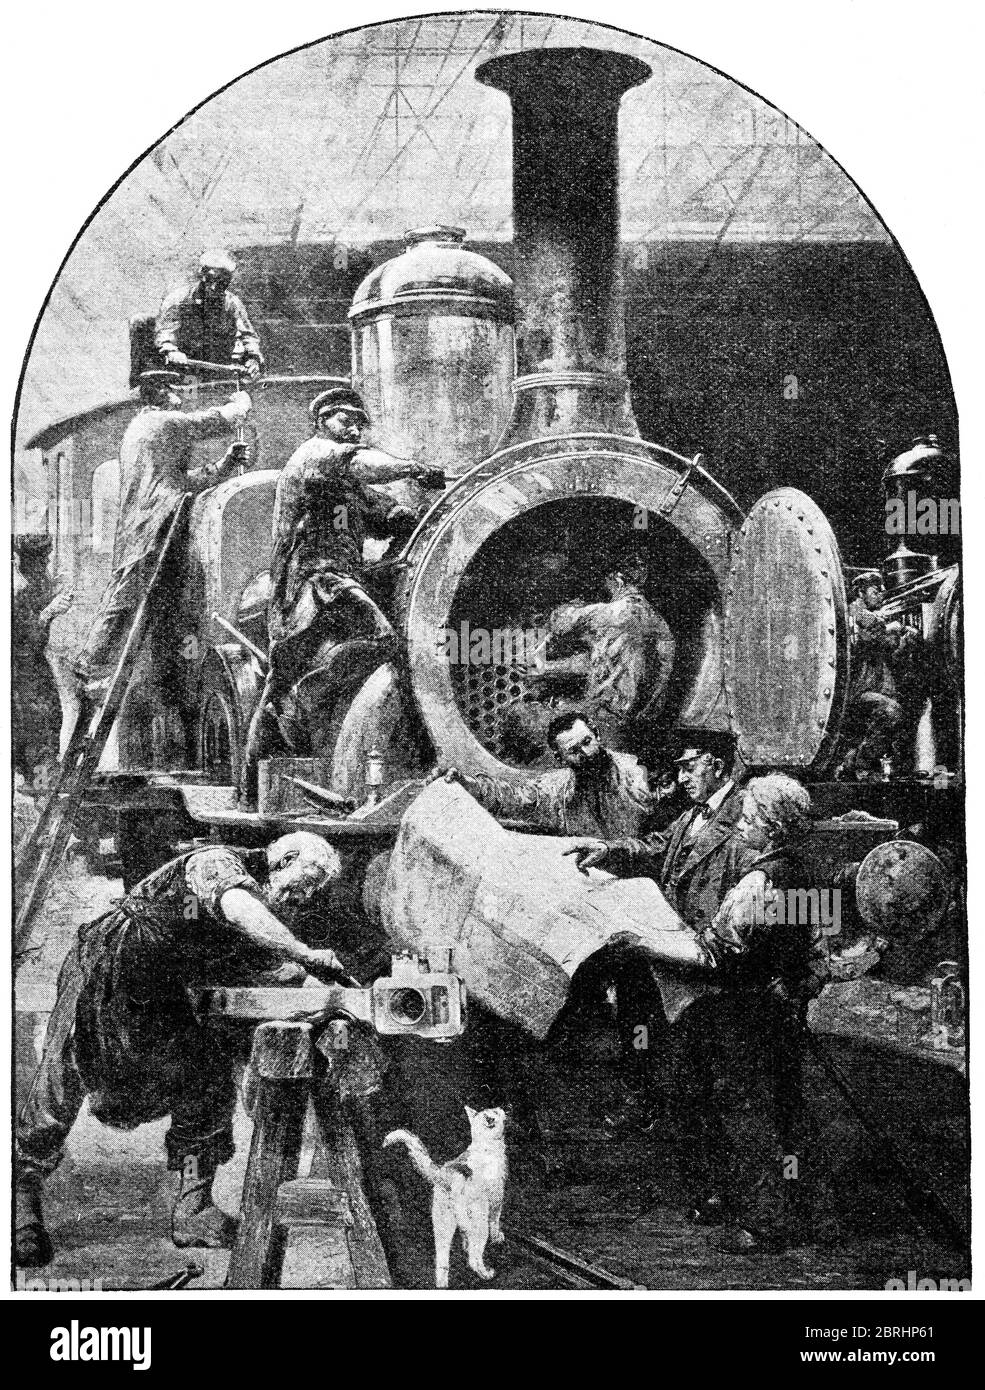 Assemblage final de la locomotive par le peintre allemand Paul Meyerheim. Allemagne. Illustration du XIXe siècle. Fond blanc. Banque D'Images